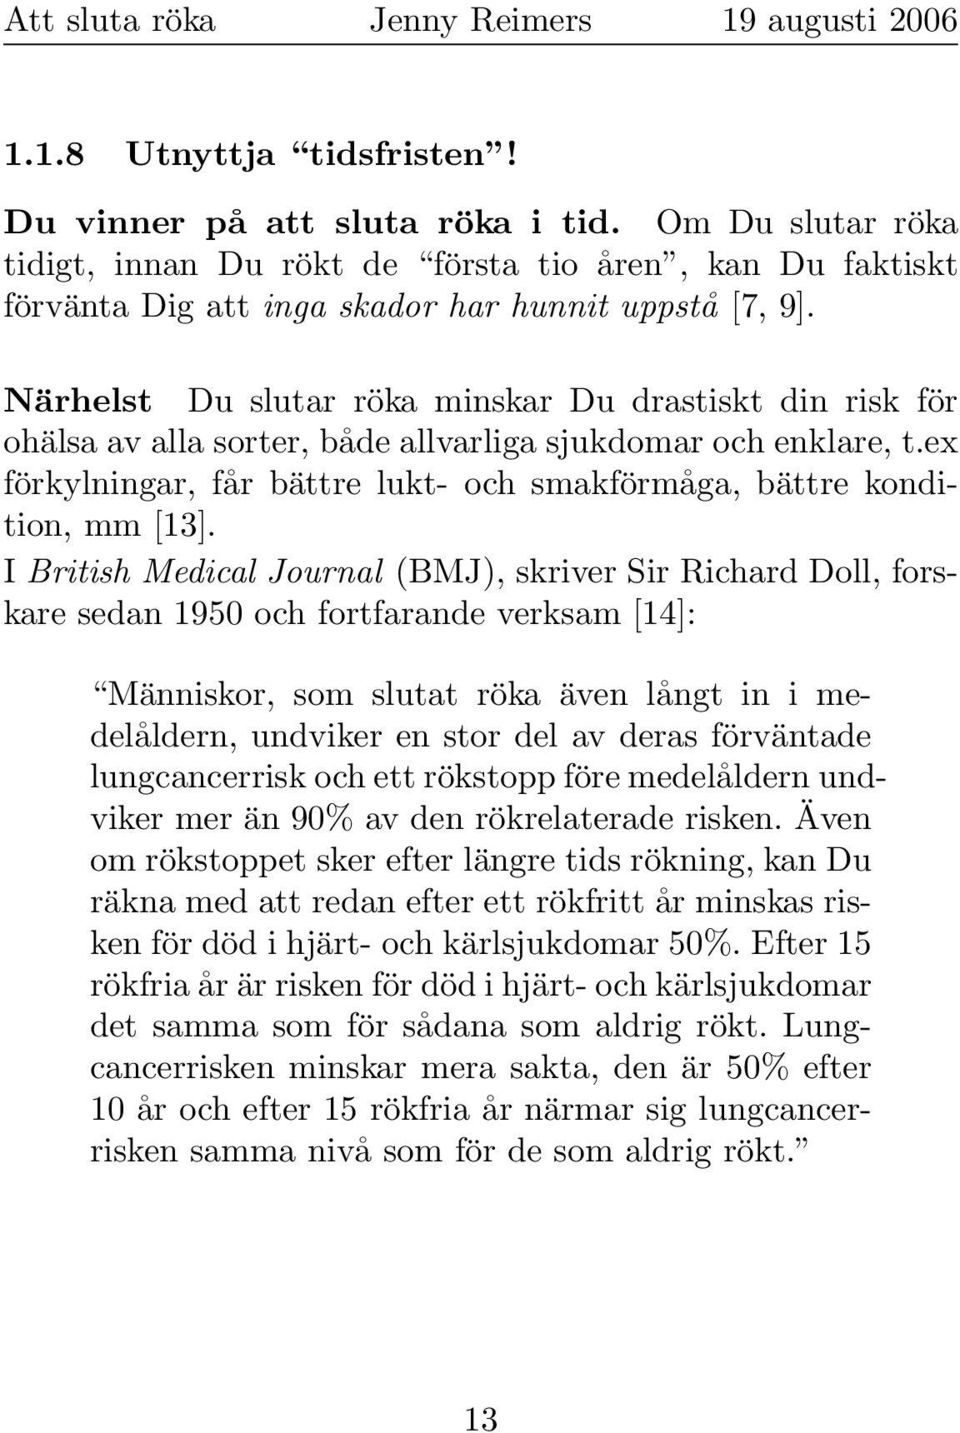 I British Medical Journal (BMJ), skriver Sir Richard Doll, forskare sedan 1950 och fortfarande verksam [14]: Människor, som slutat röka även långt in i medelåldern, undviker en stor del av deras